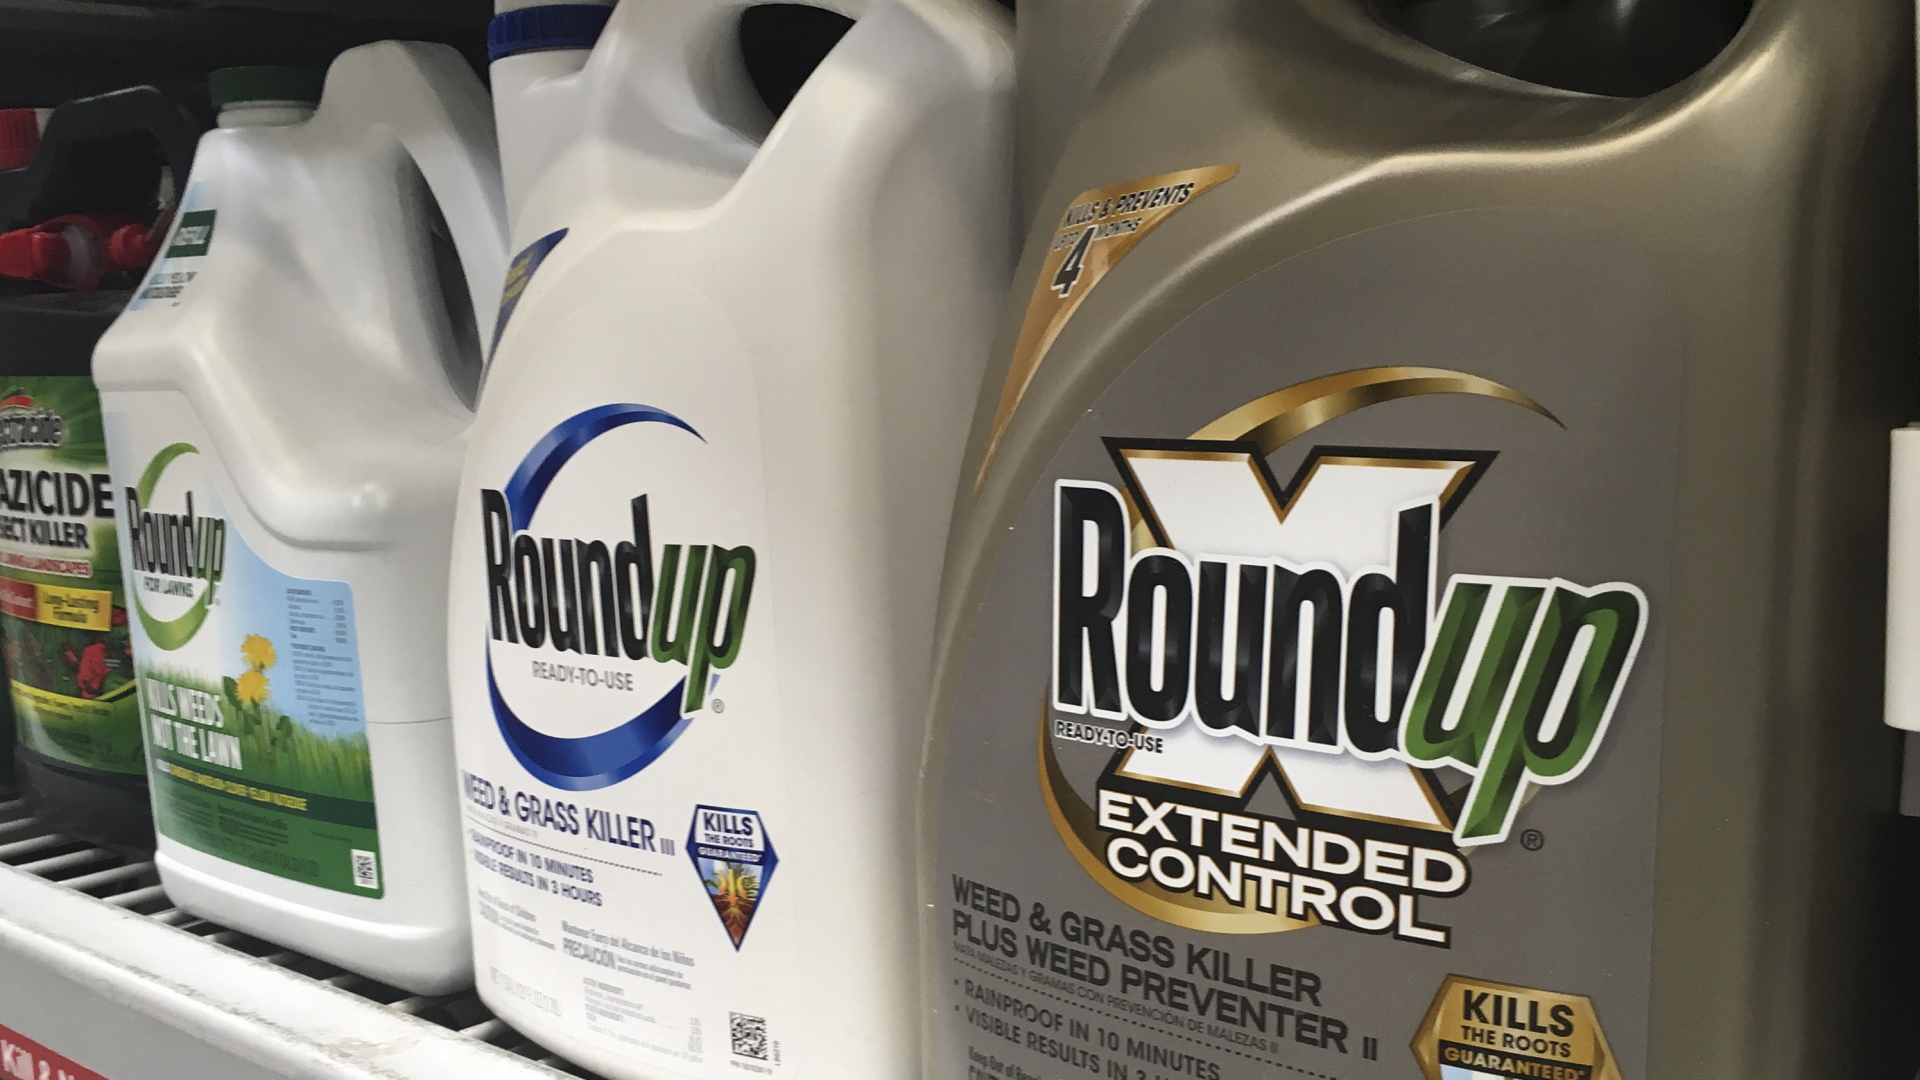 Behälter mit Roundup, einem Unkrautvernichter von Monsanto, stehen in einem Regal in einem Baumarkt.